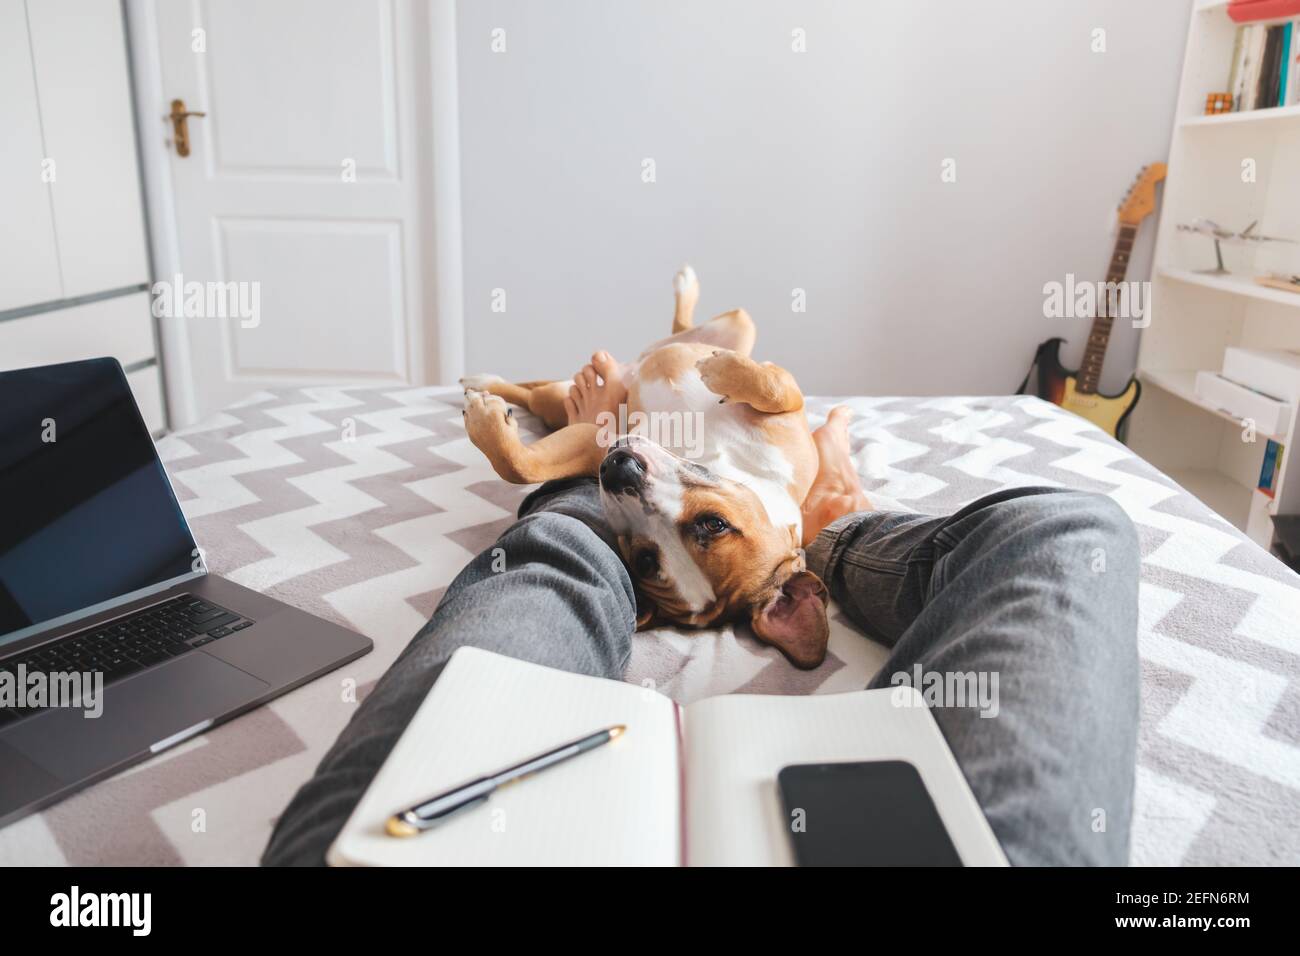 Arbeiten von zu Hause, häusliches Leben mit einem Haustier. Hund liegt im Bett in den Füßen der Person im Schlafzimmer Stockfoto